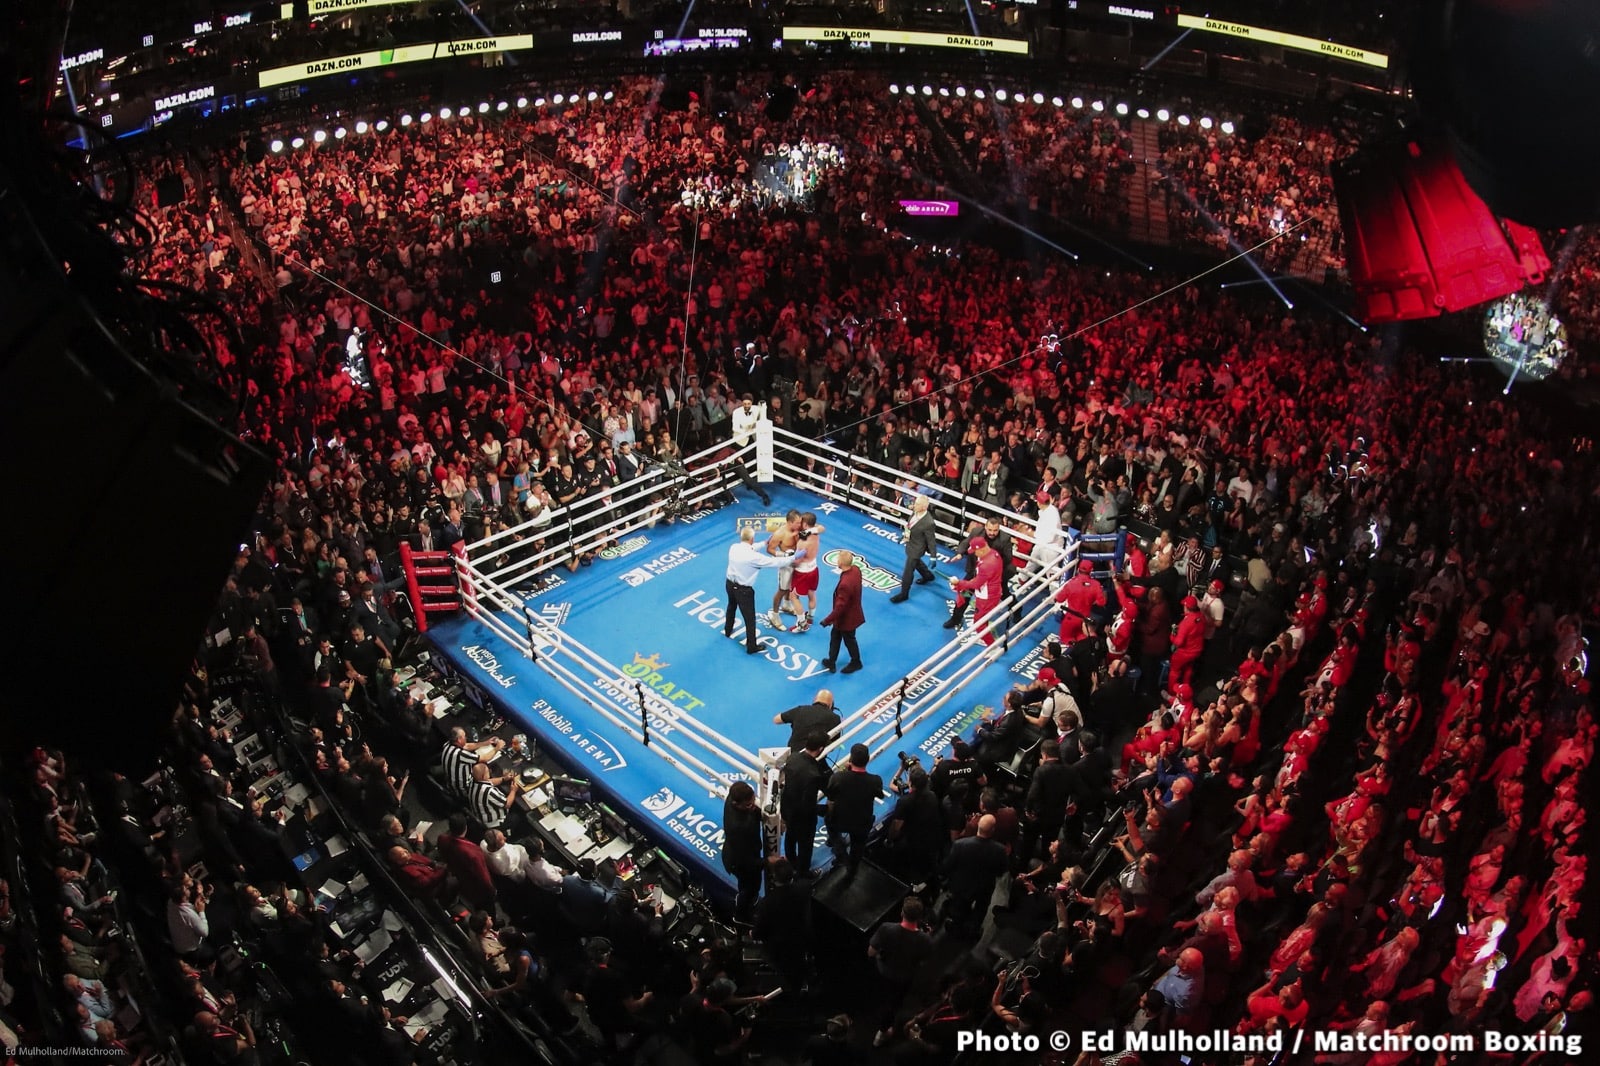 Canelo Alvarez boxing image / photo